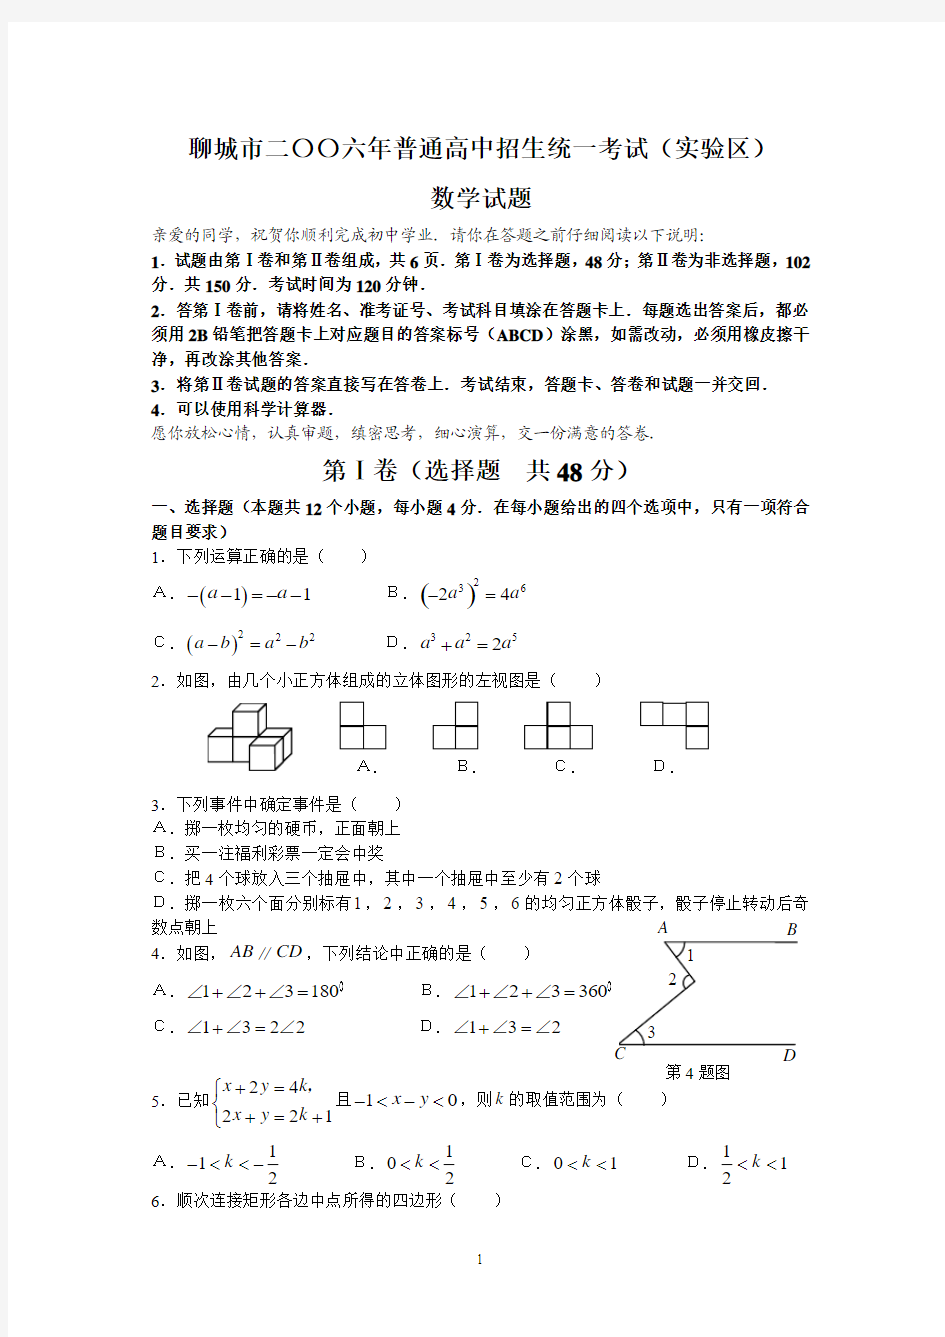 2006年山东聊城(实验区)数学试题及答案